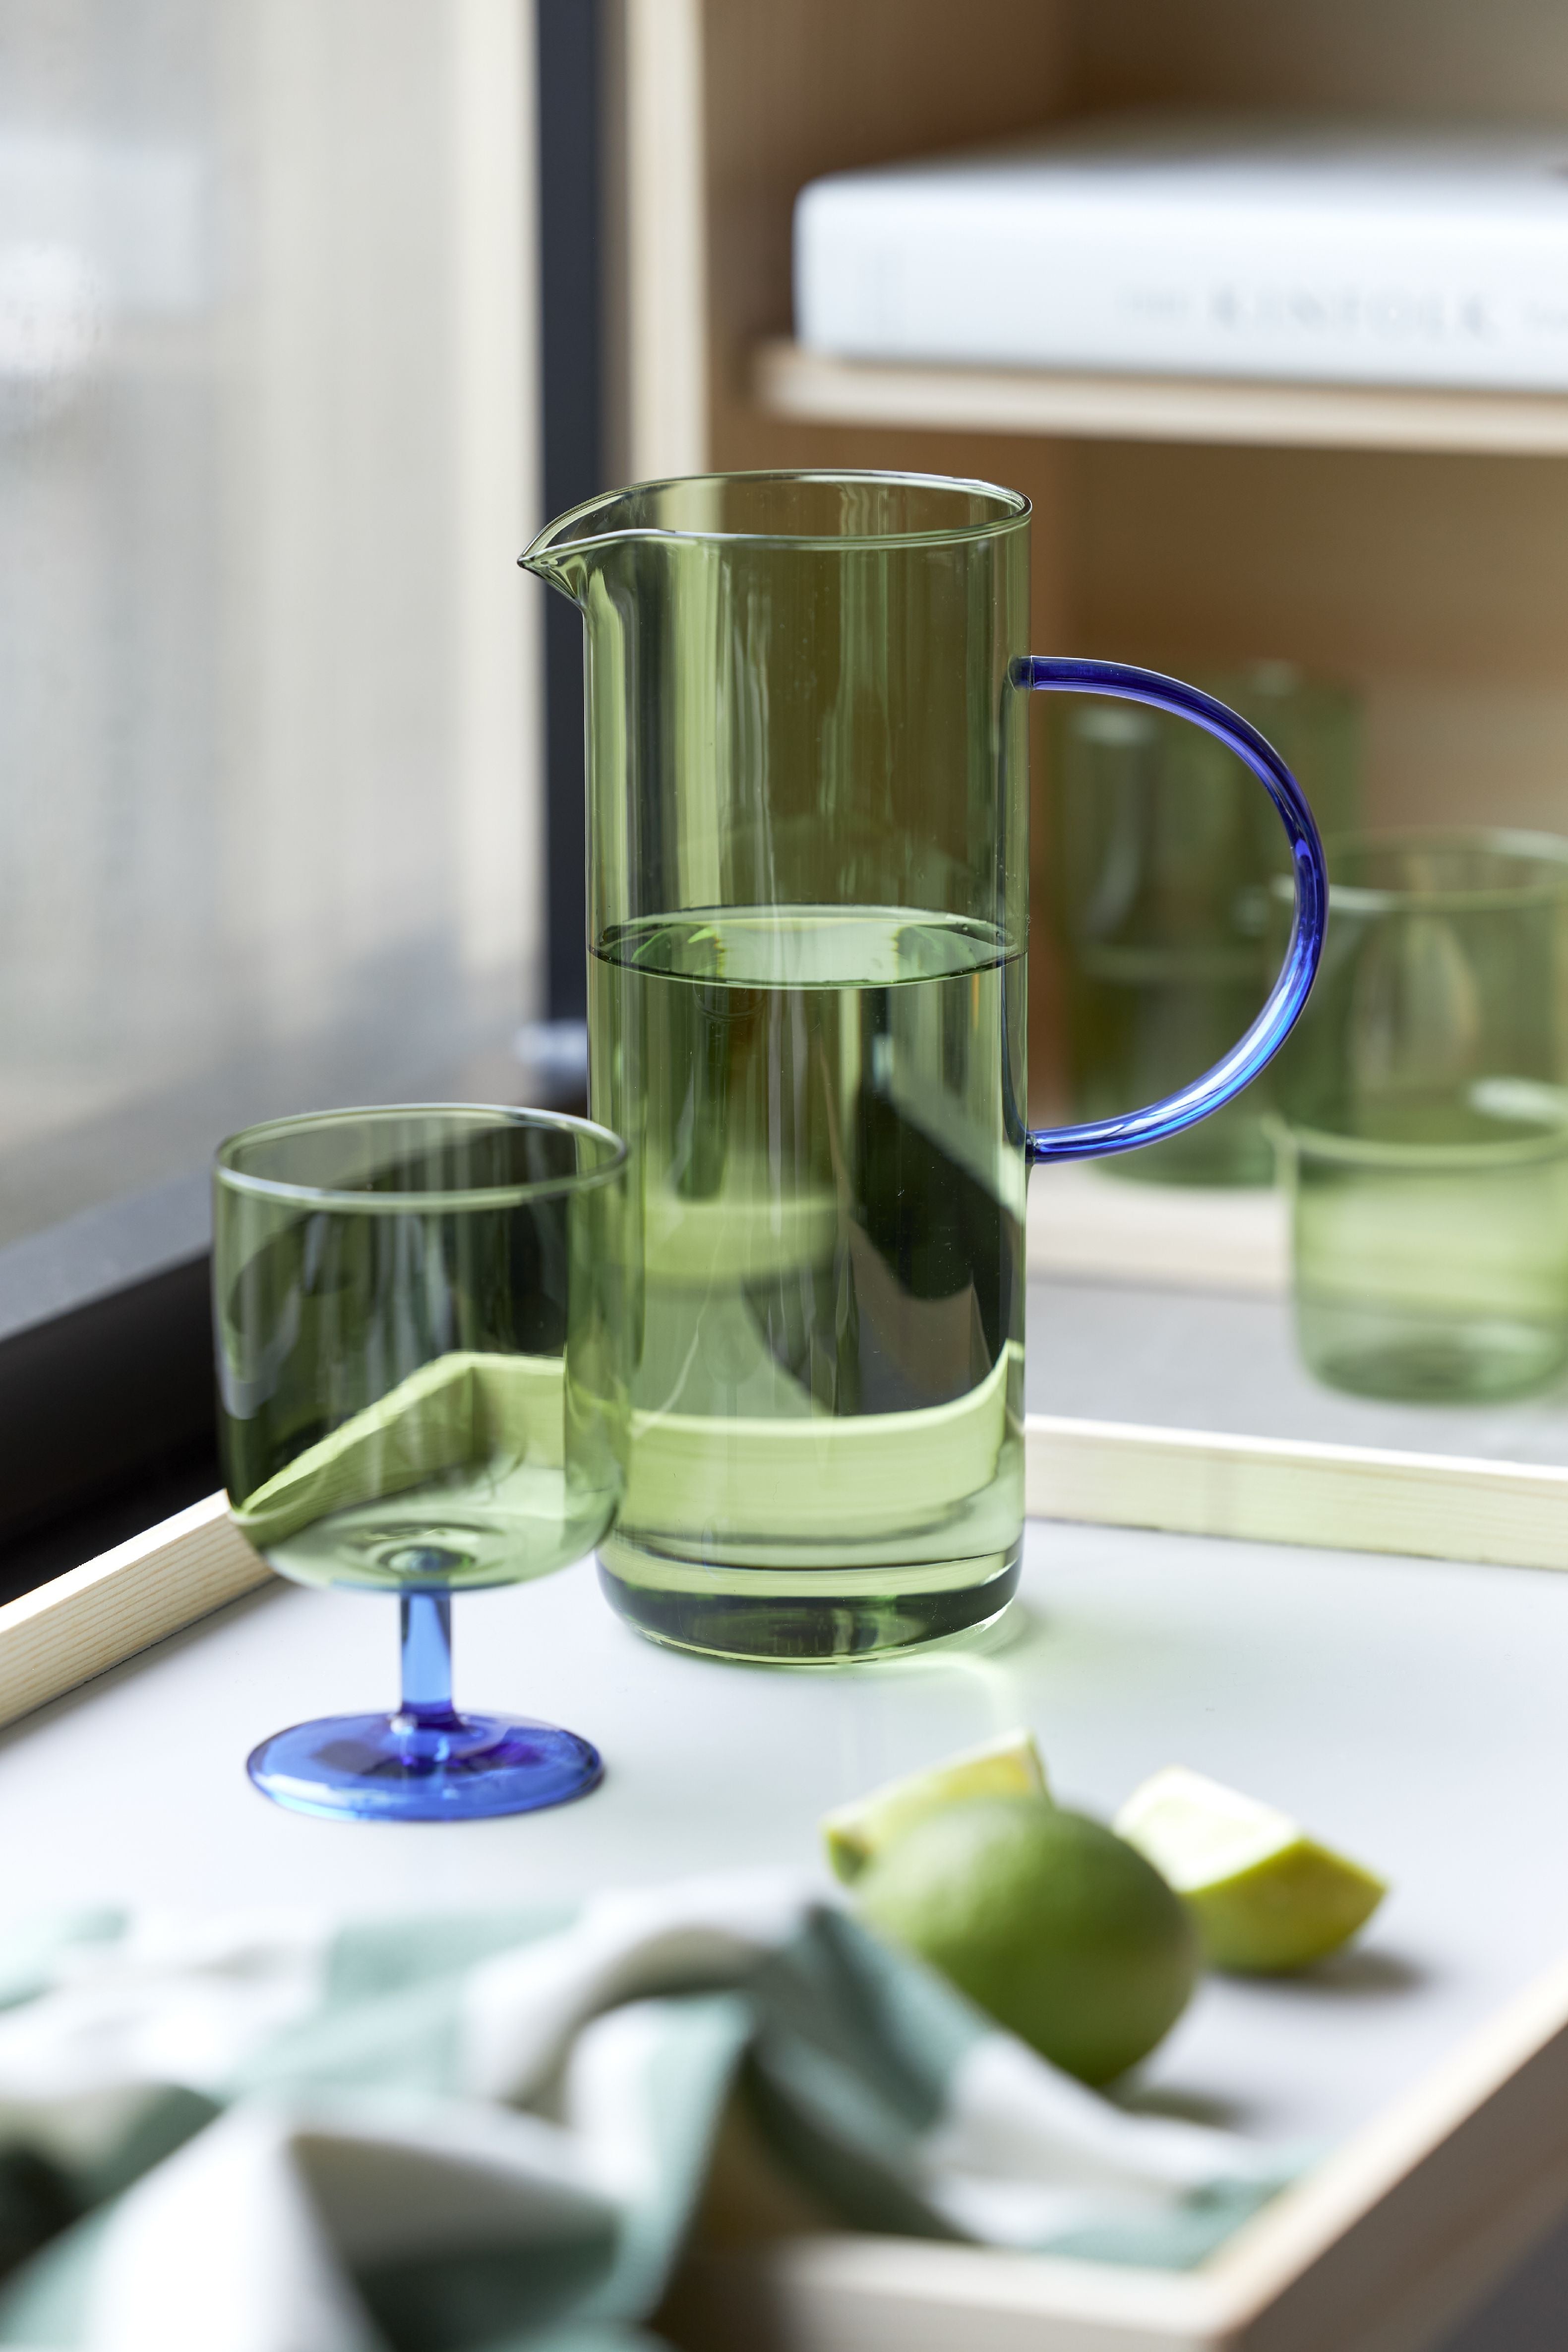 Lyngby Glas Torino glas kanna 1,1 L, grön/blå